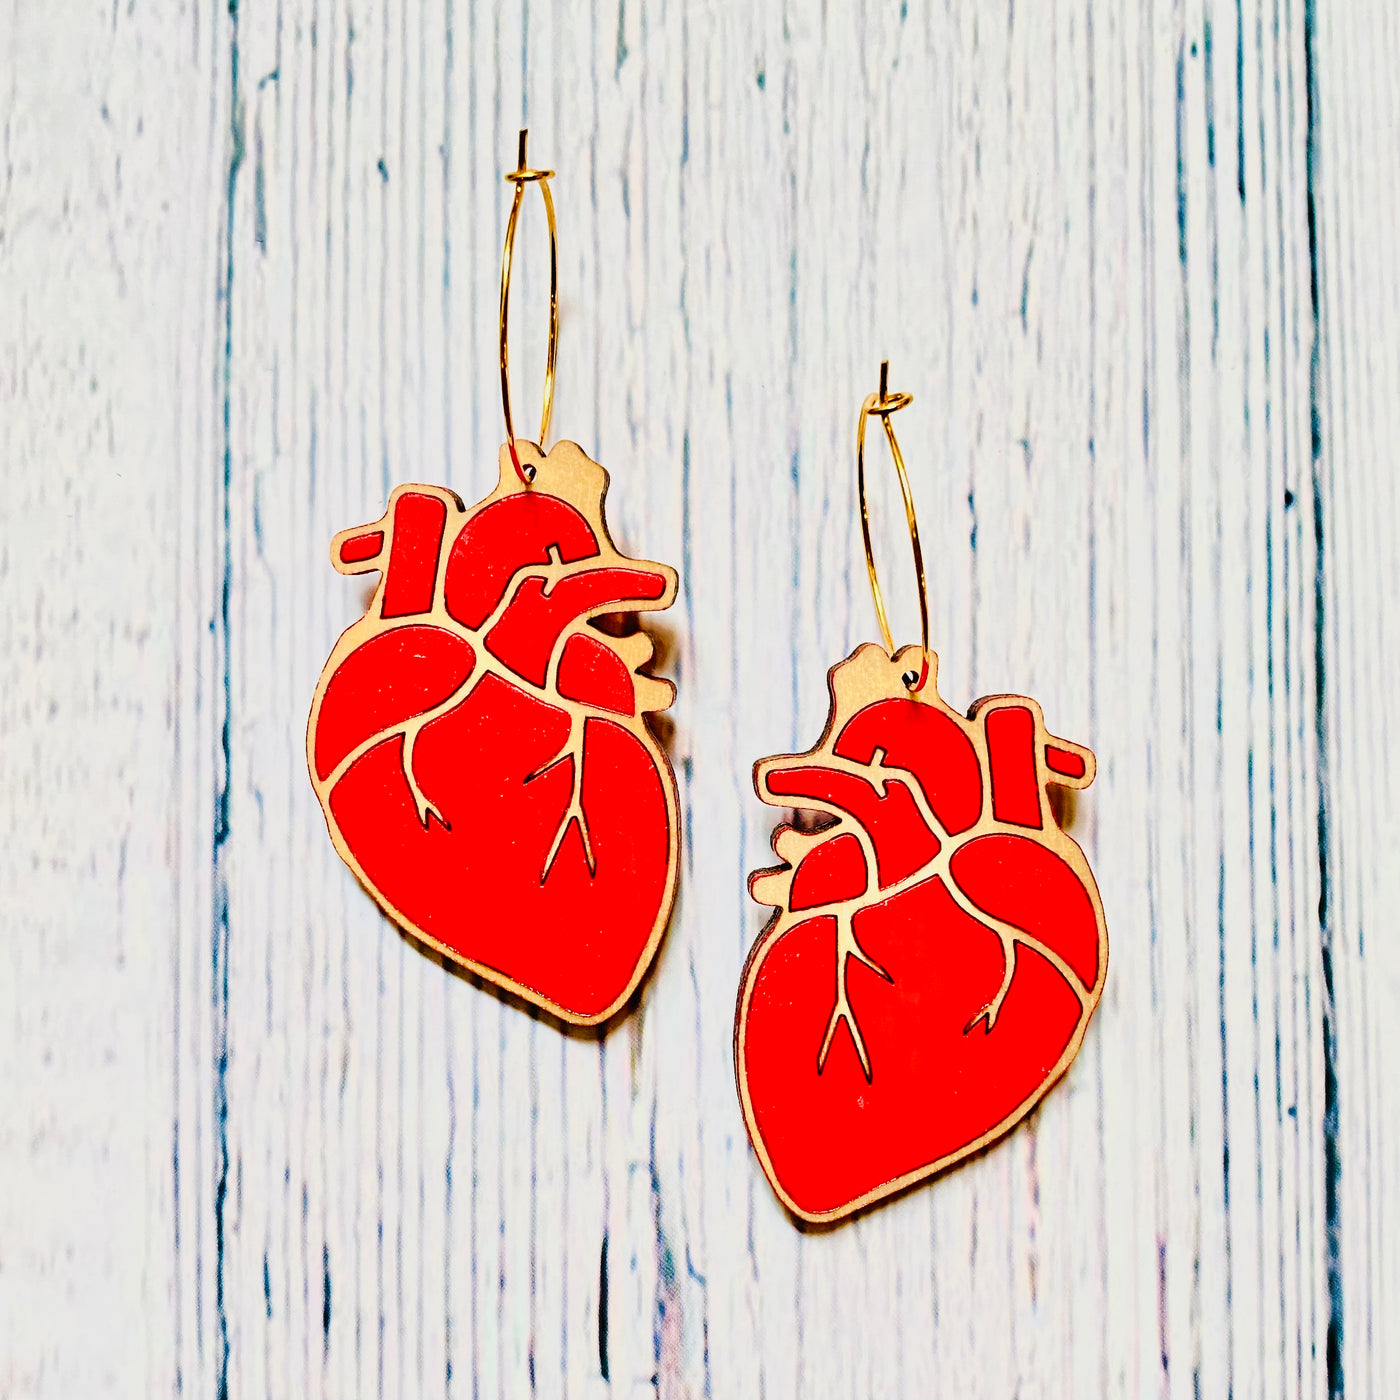 Red anatomical heart wooden hoop earrings.